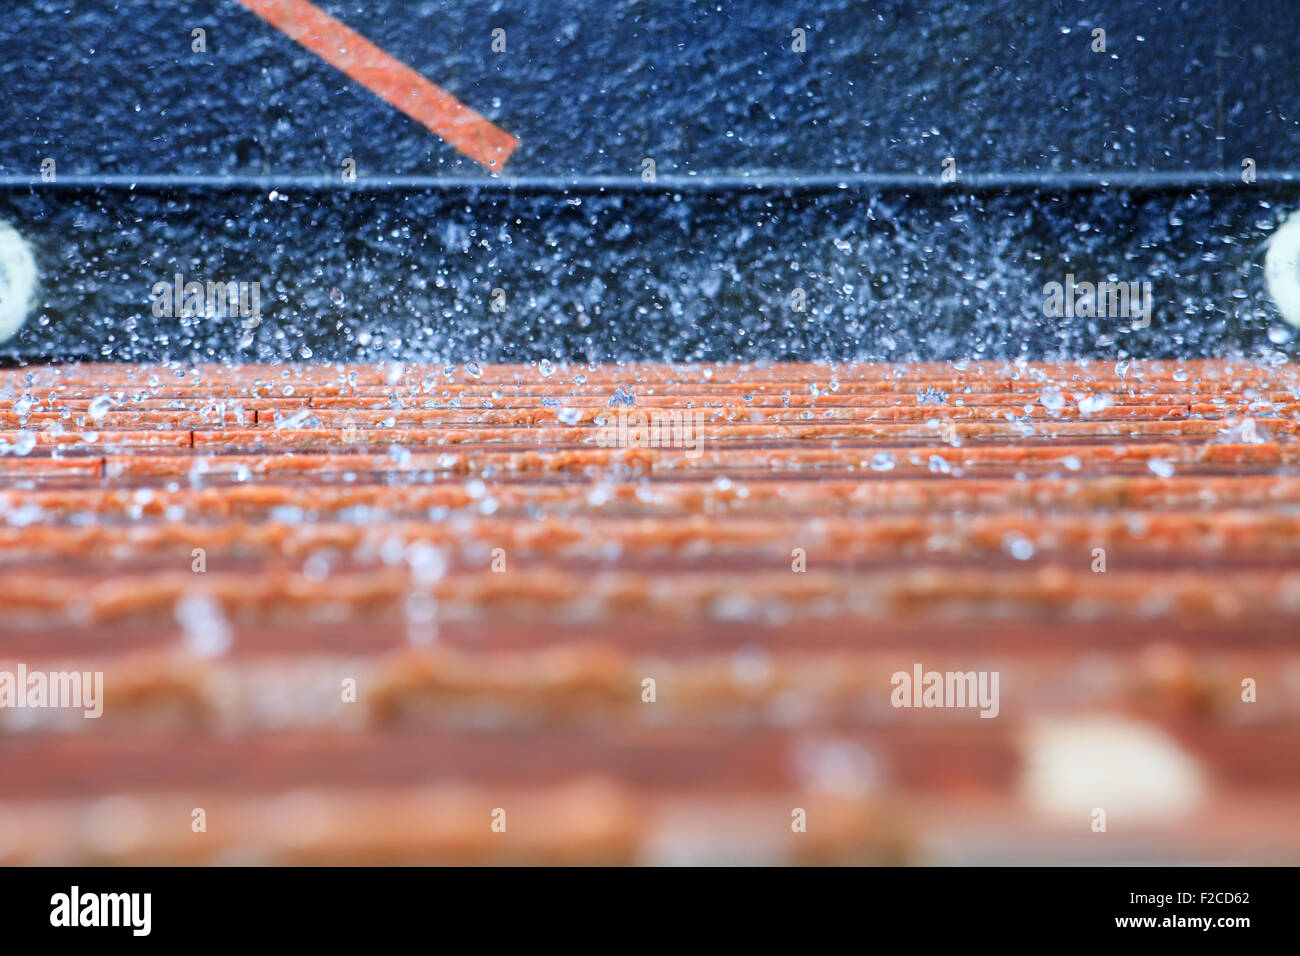 Zusammenfassung Hintergrund von Spritzwasser auf blau orange Wand Stockfoto